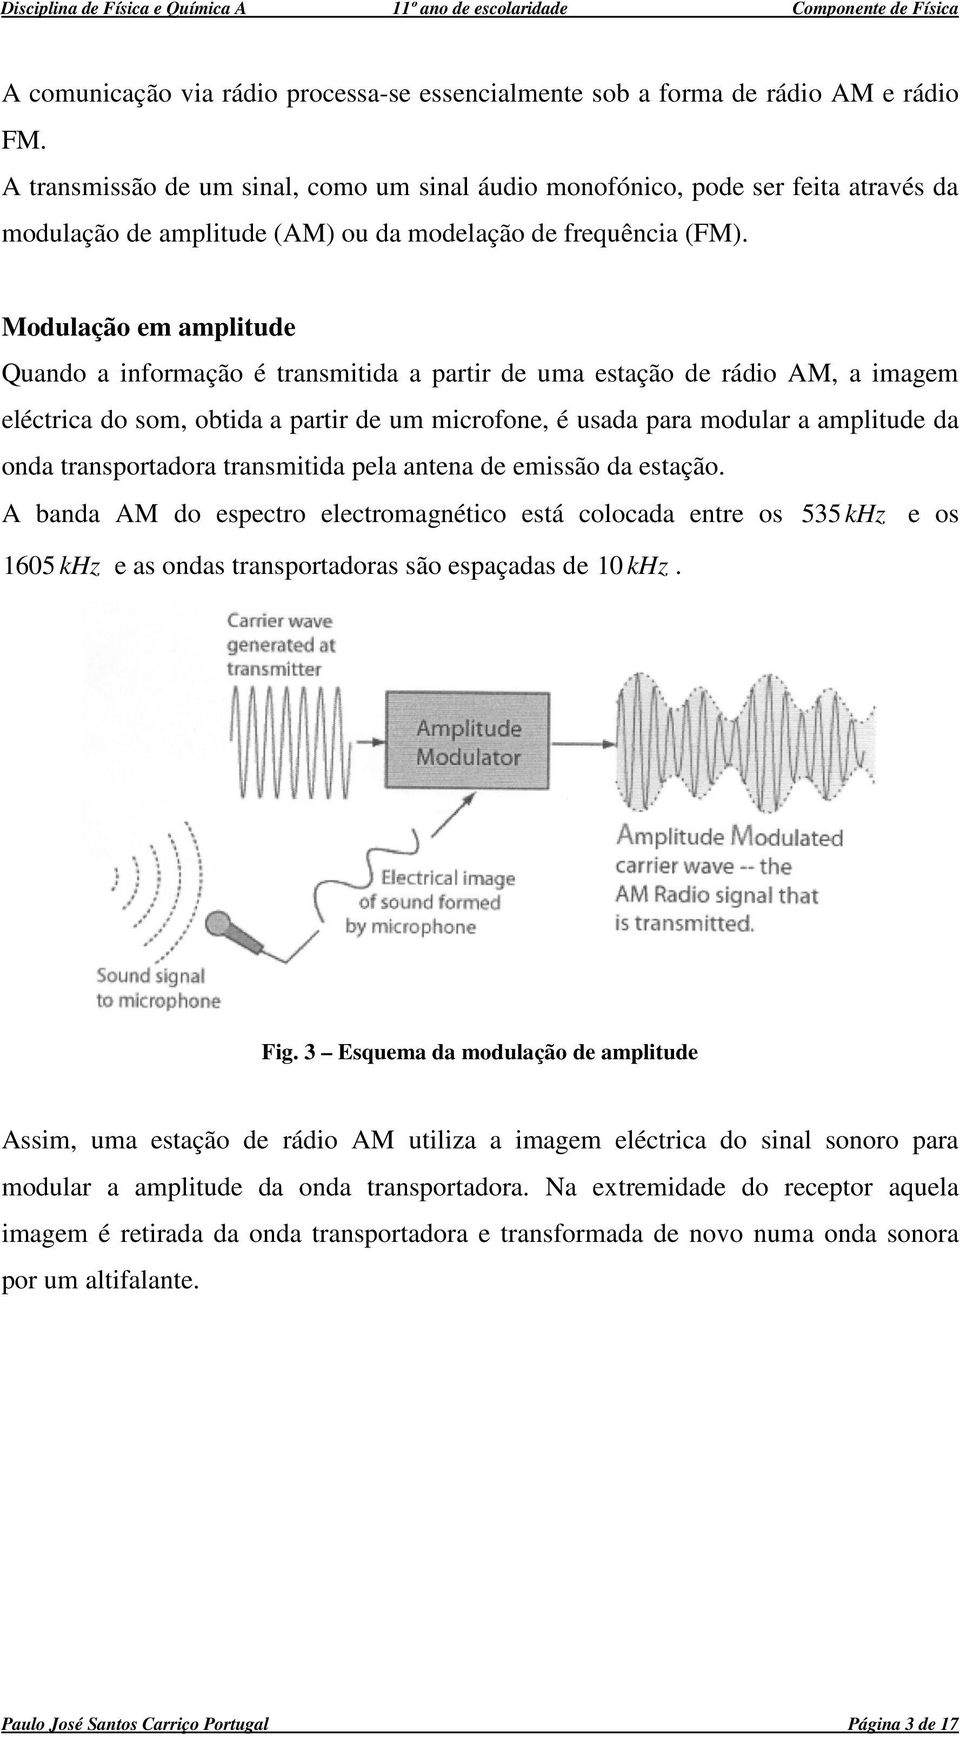 Modulação em amplitude Quado a iformação é trasmitida a partir de uma estação de rádio AM, a imagem eléctrica do som, obtida a partir de um microfoe, é usada para modular a amplitude da oda